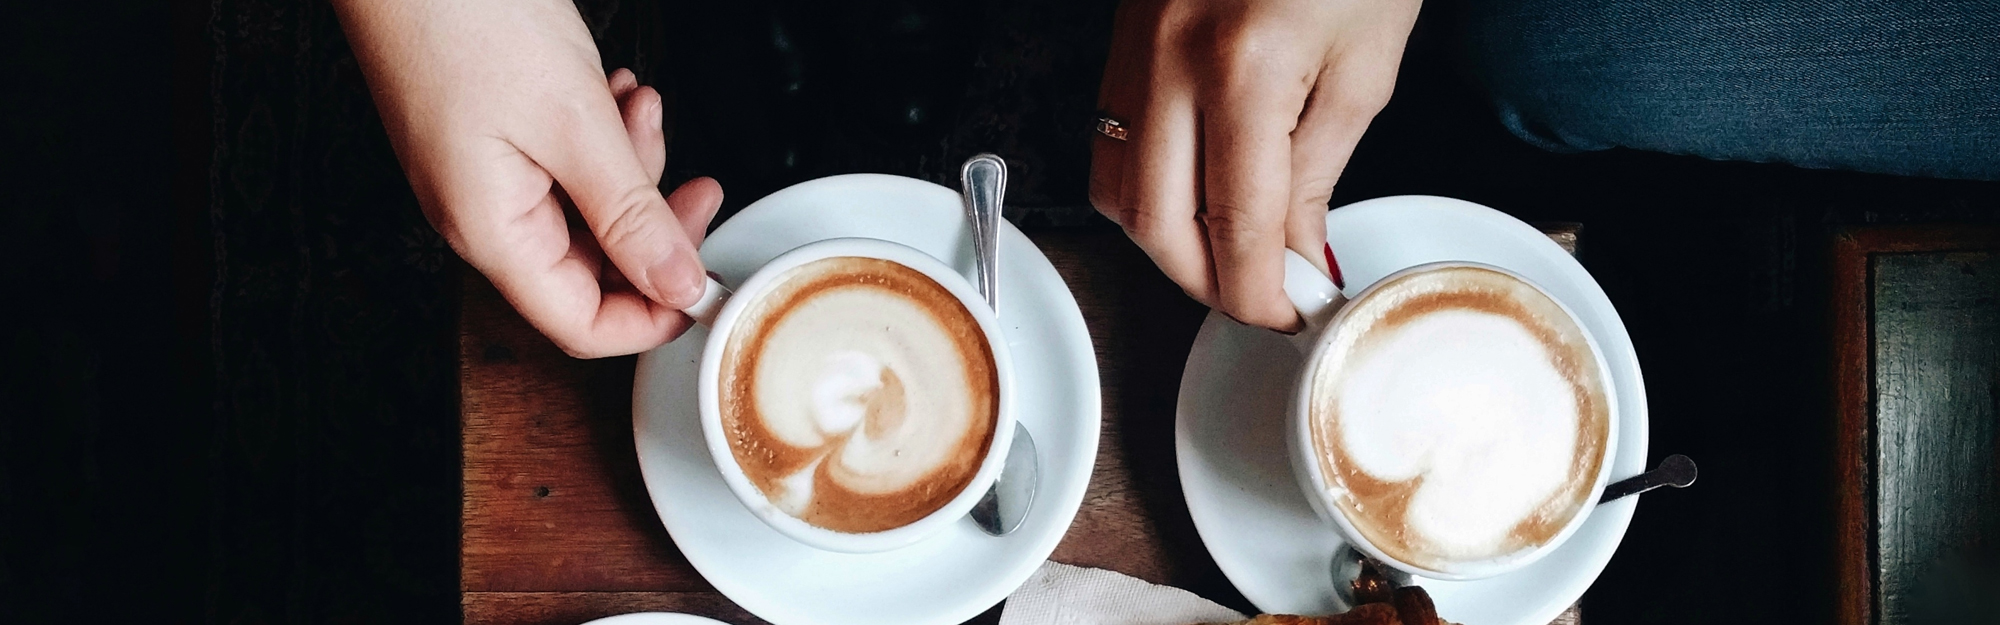 Två persioner sitter med varsin kaffe latte på ett café